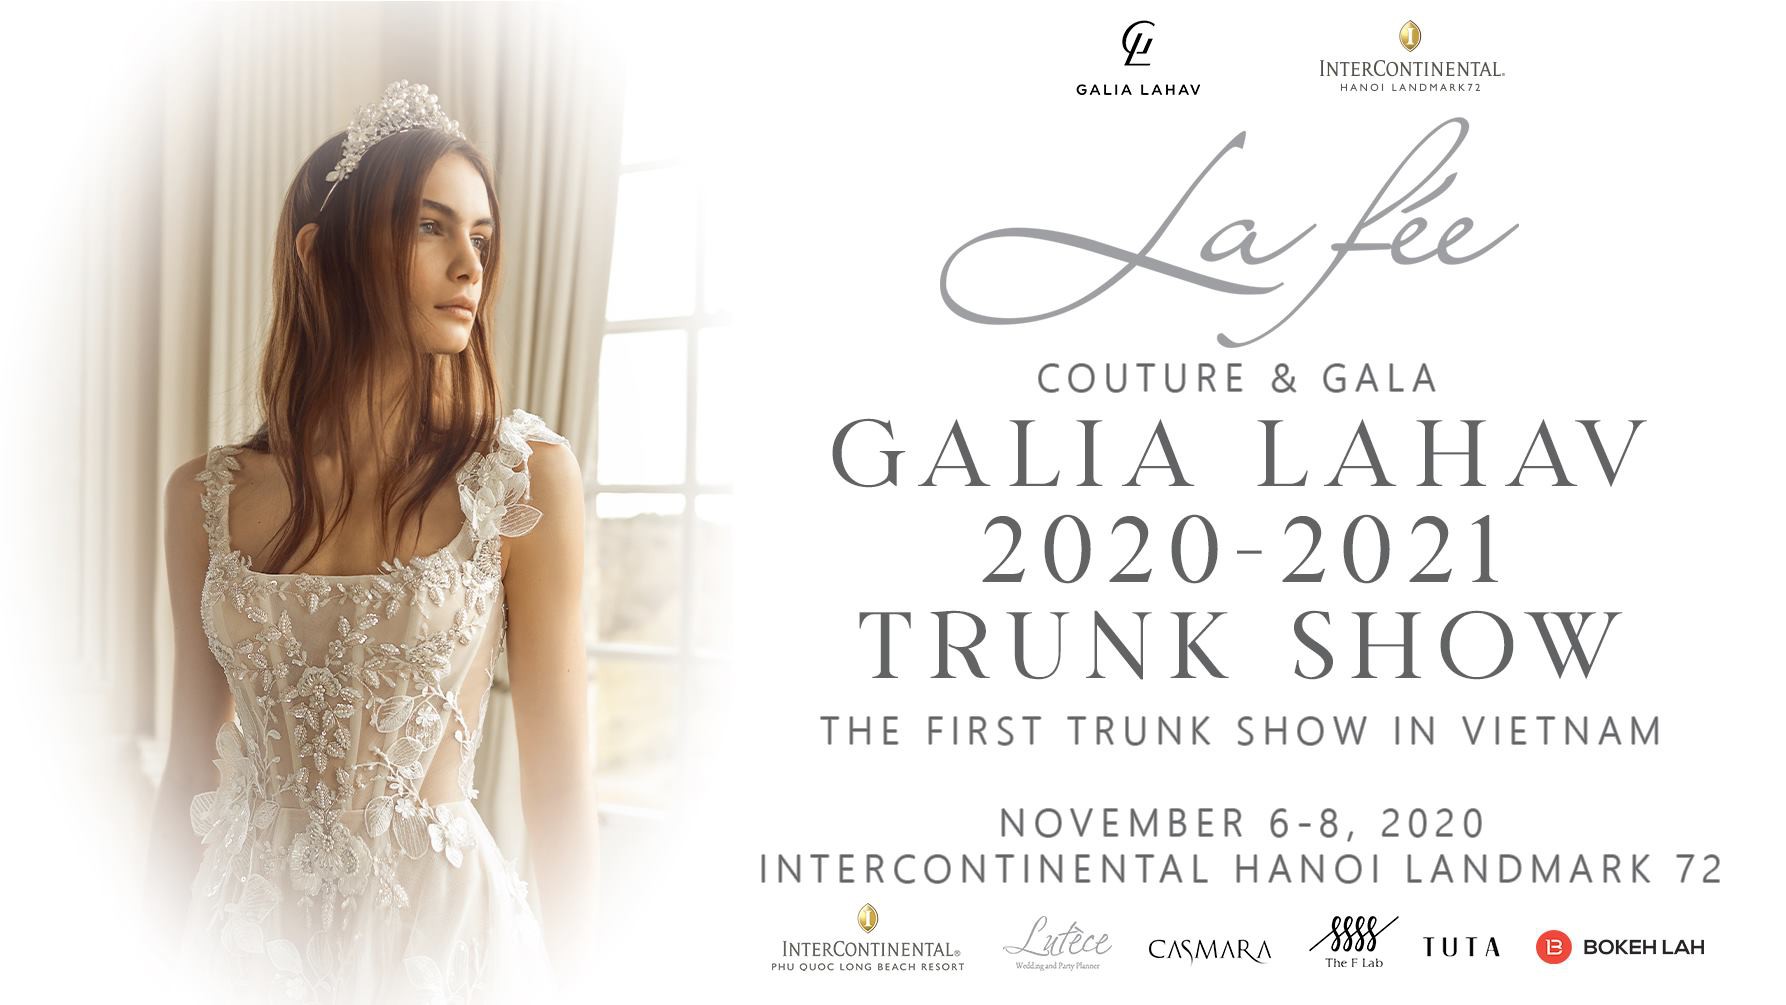 Sự kiện triển lãm váy cưới - GALIA LAHAV 2020/2021 TRUNK SHOW